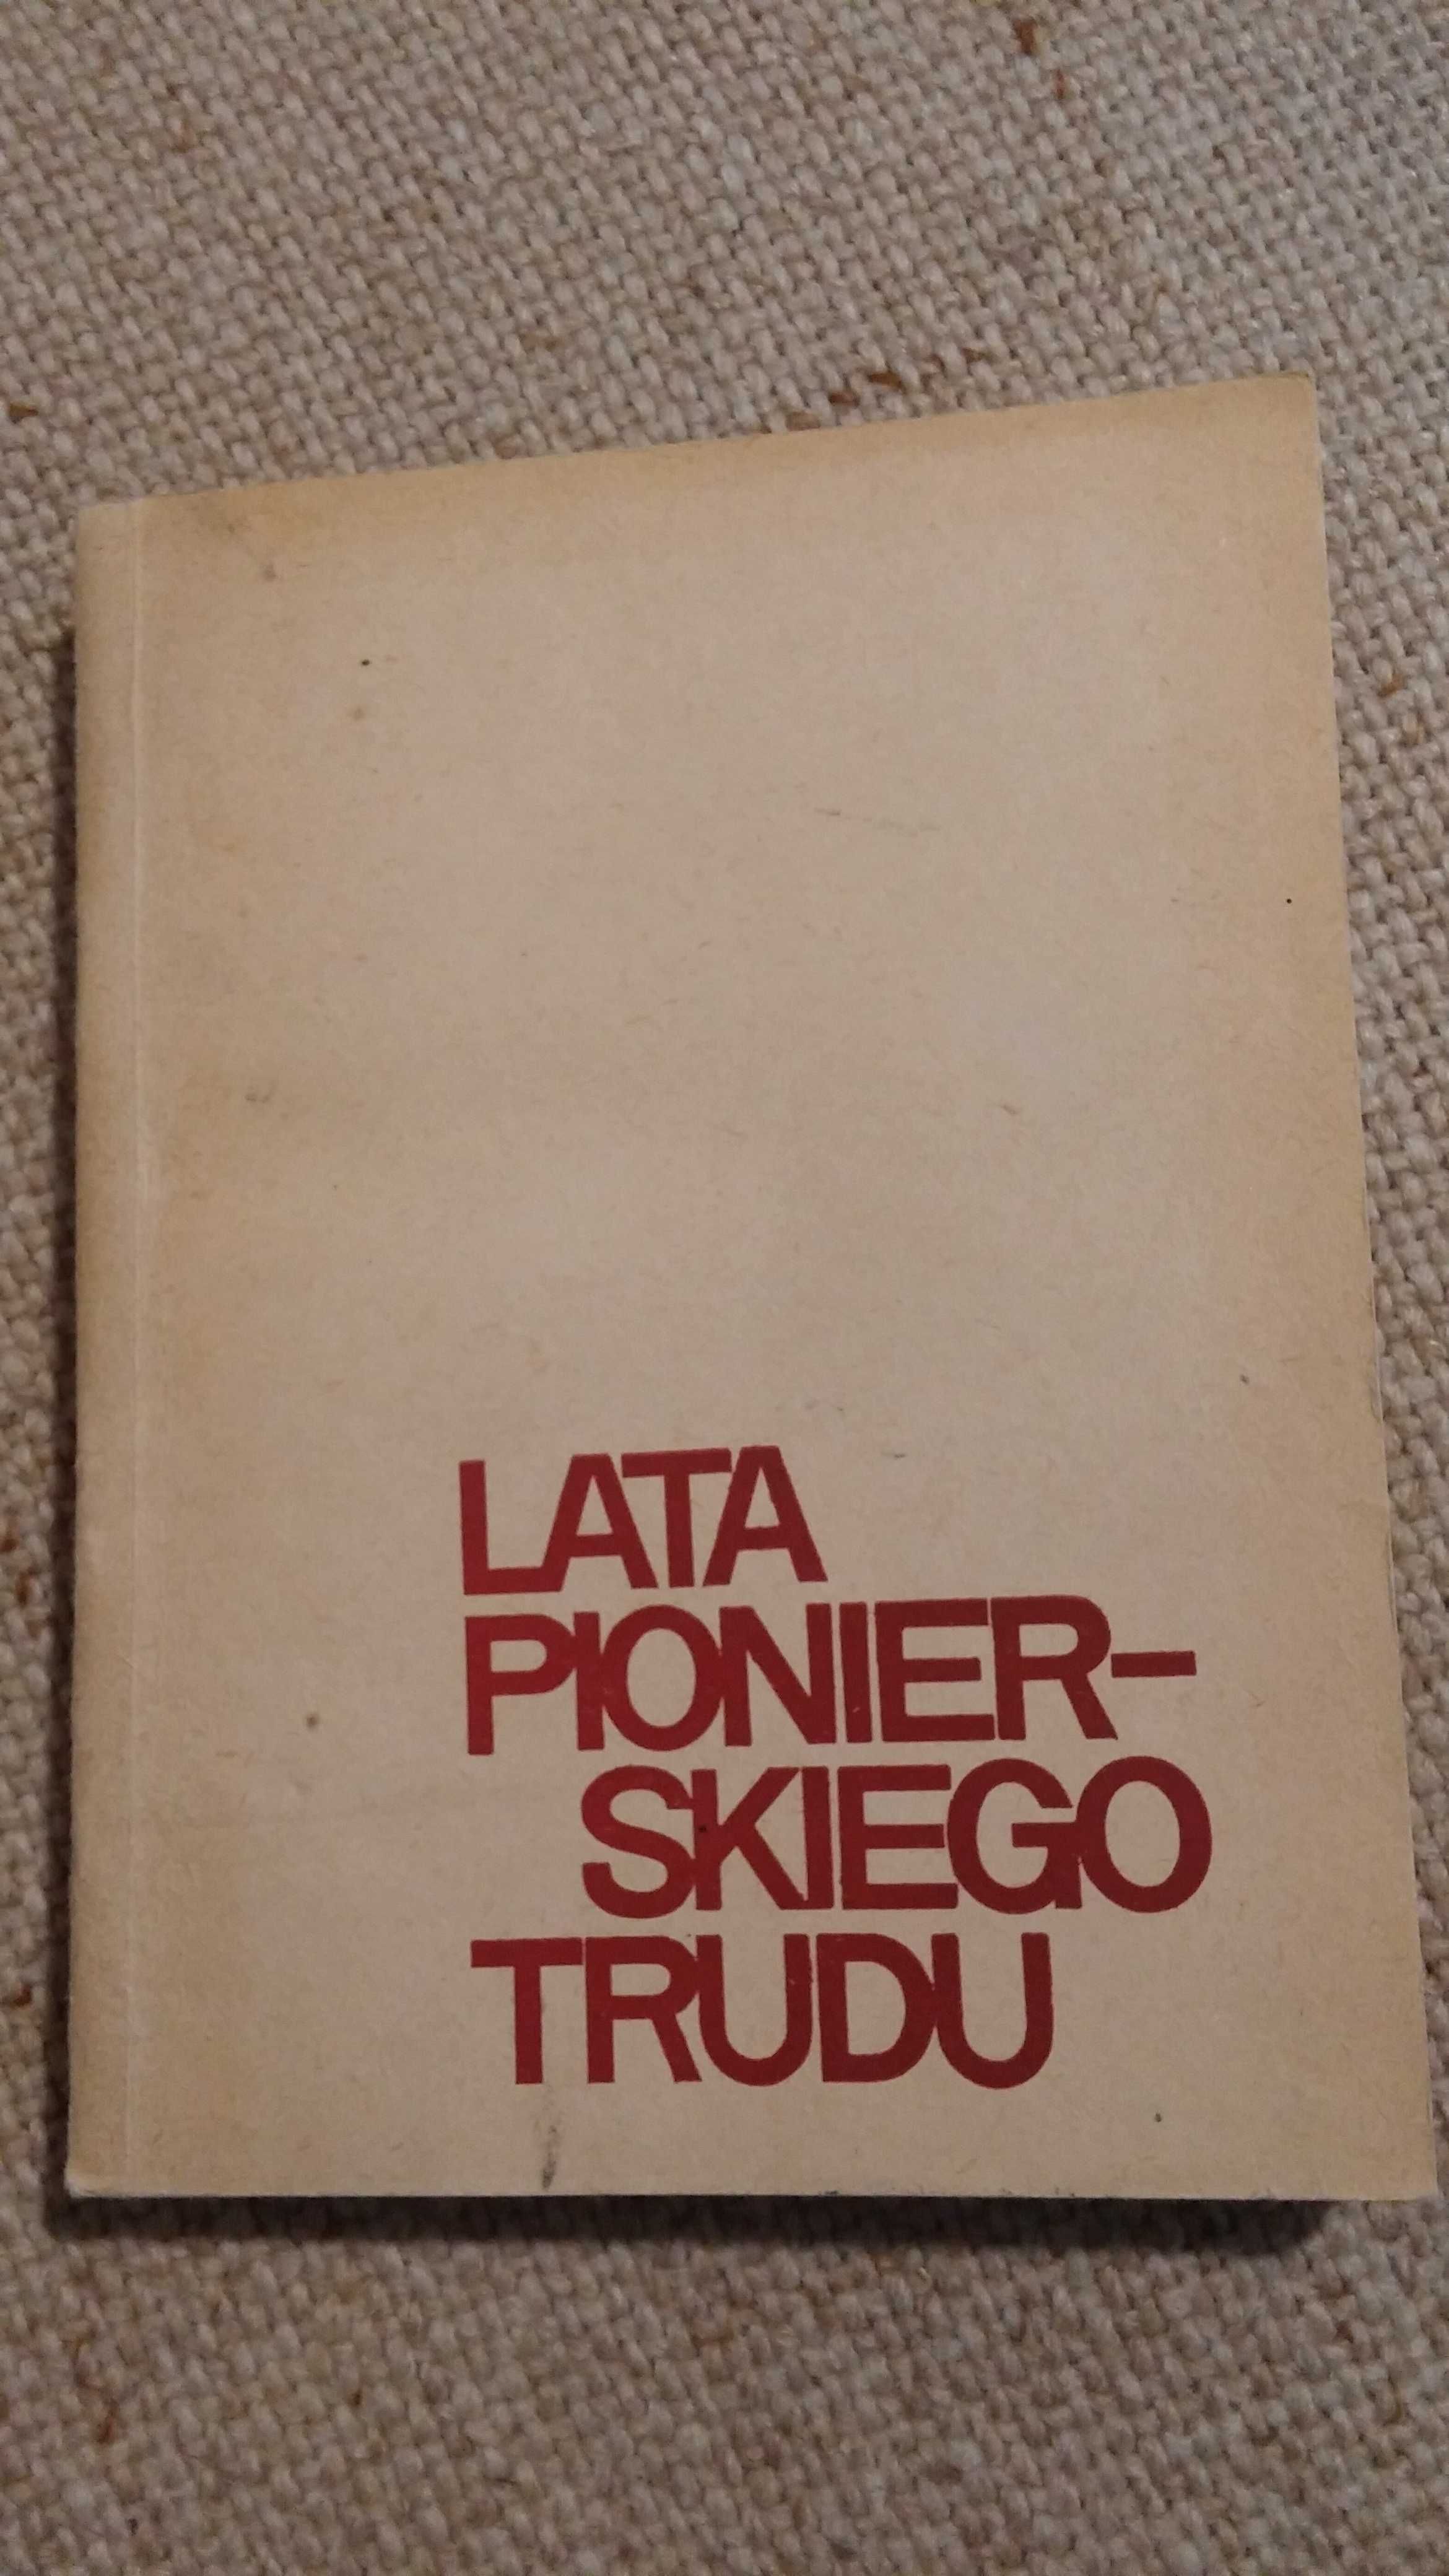 Lata pionierskiego trudu Głowacki, Narkowicz wyd 1970